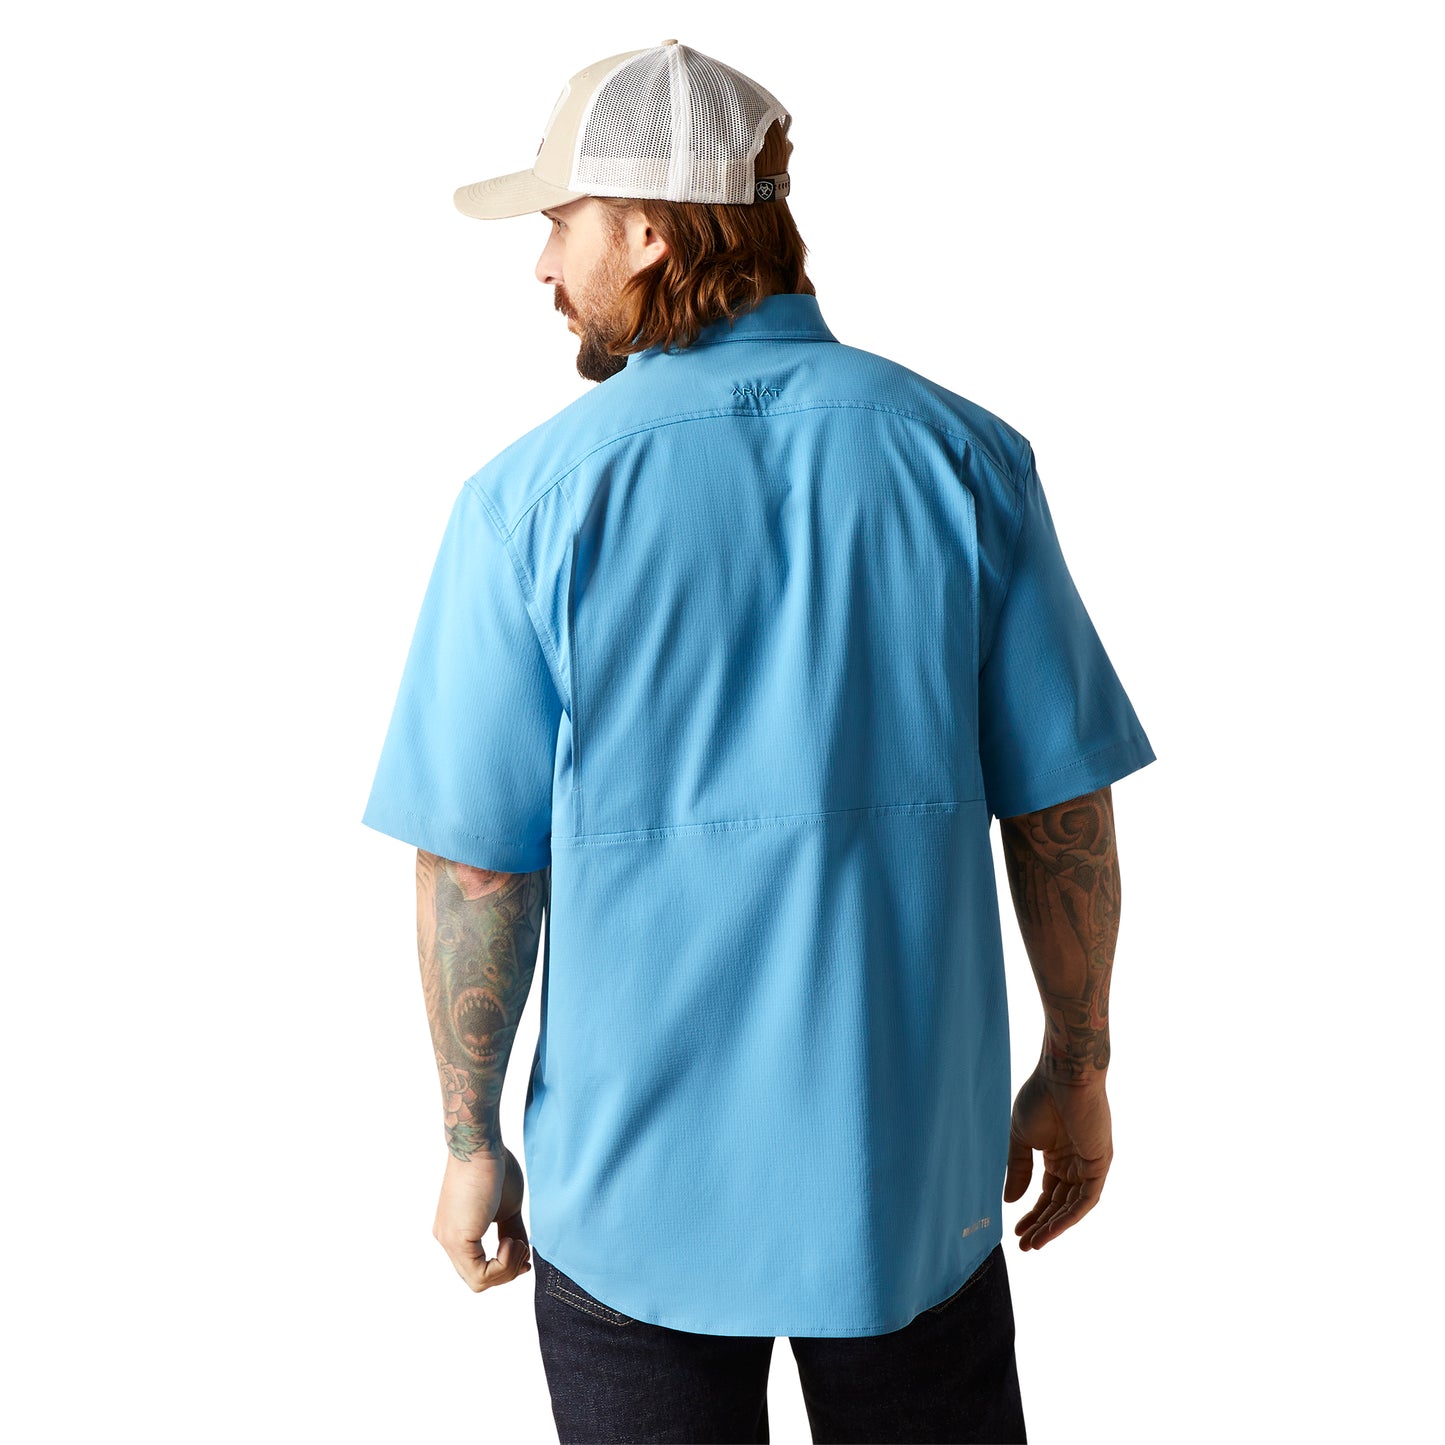 VentTEK Classic Fit Shirt-Cendre Blue